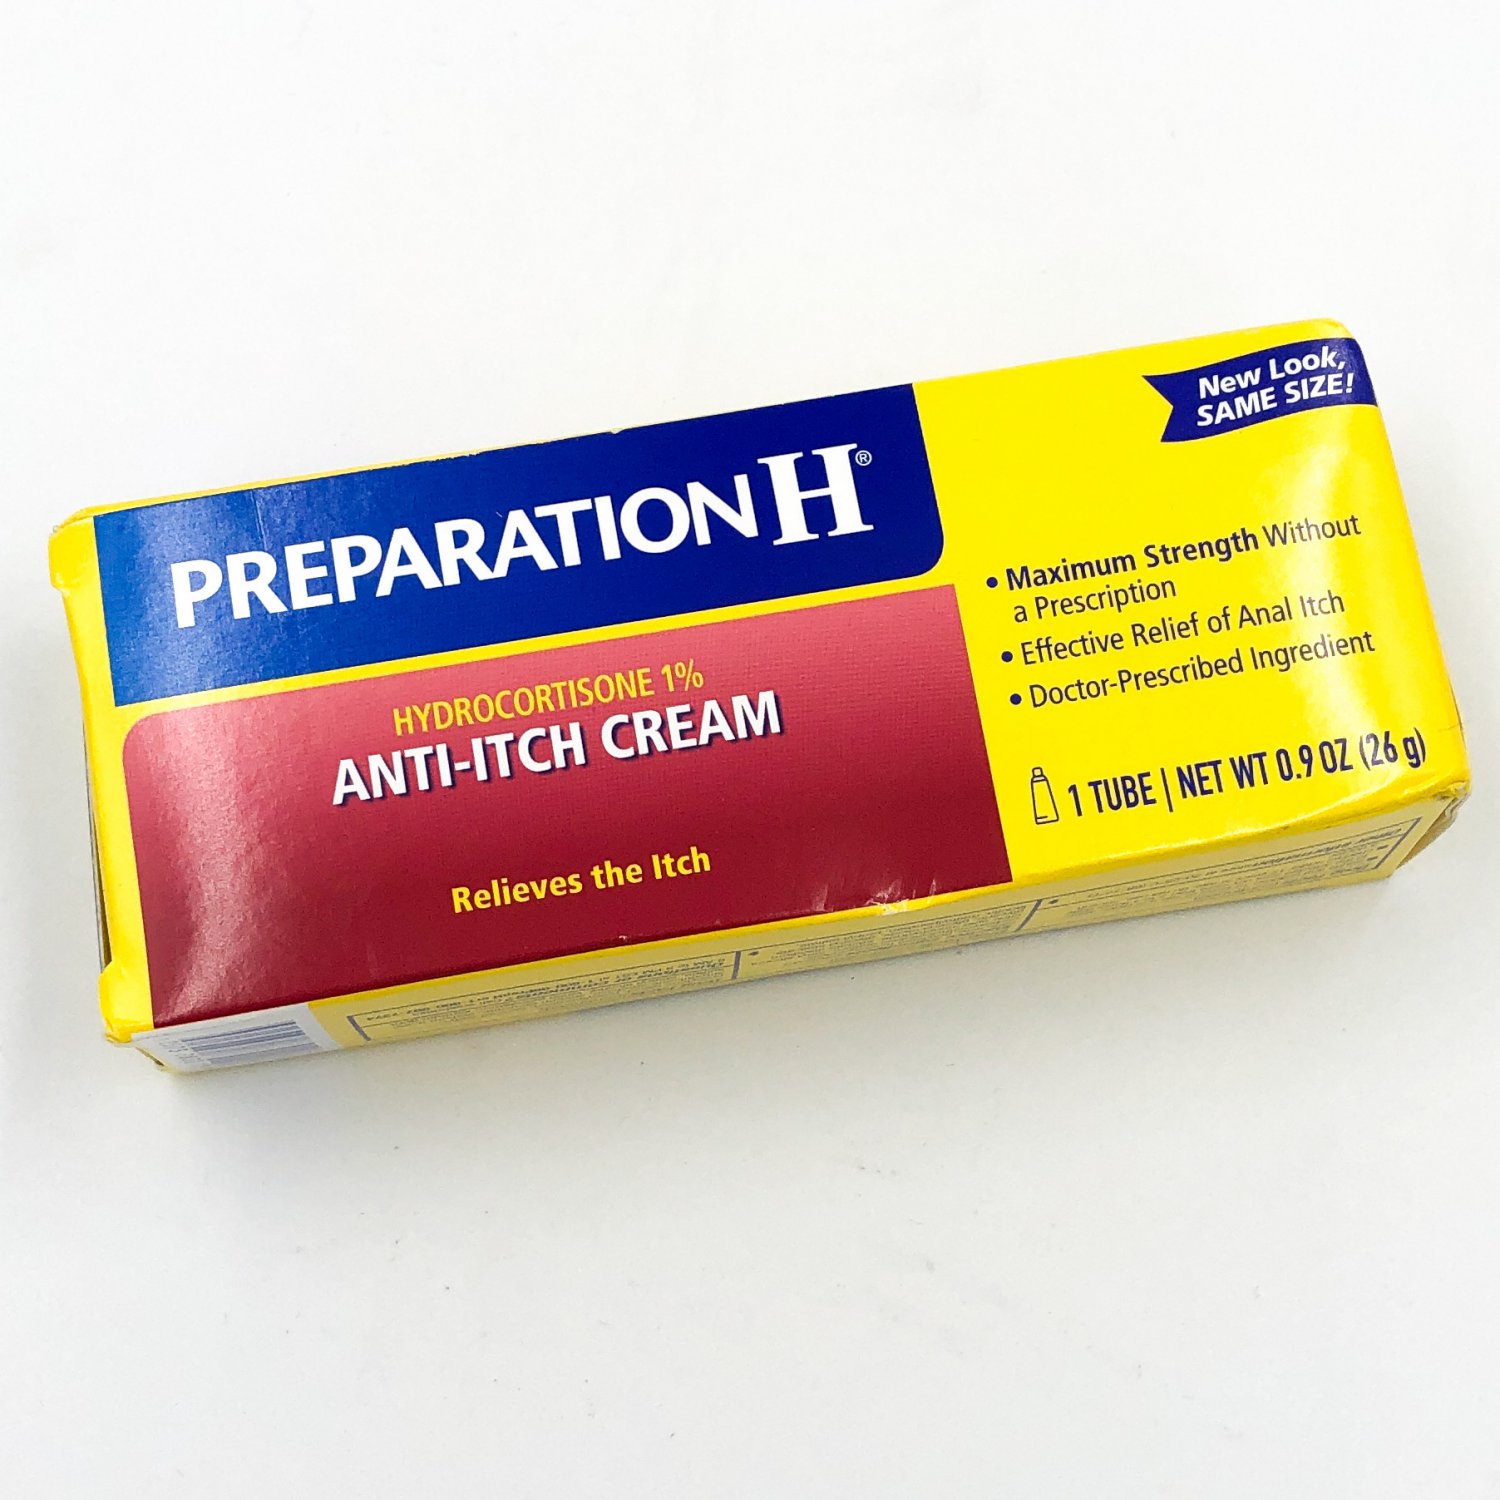 Preparation H Anti-Itch Hemorrhoid Cream Hydrocotisone